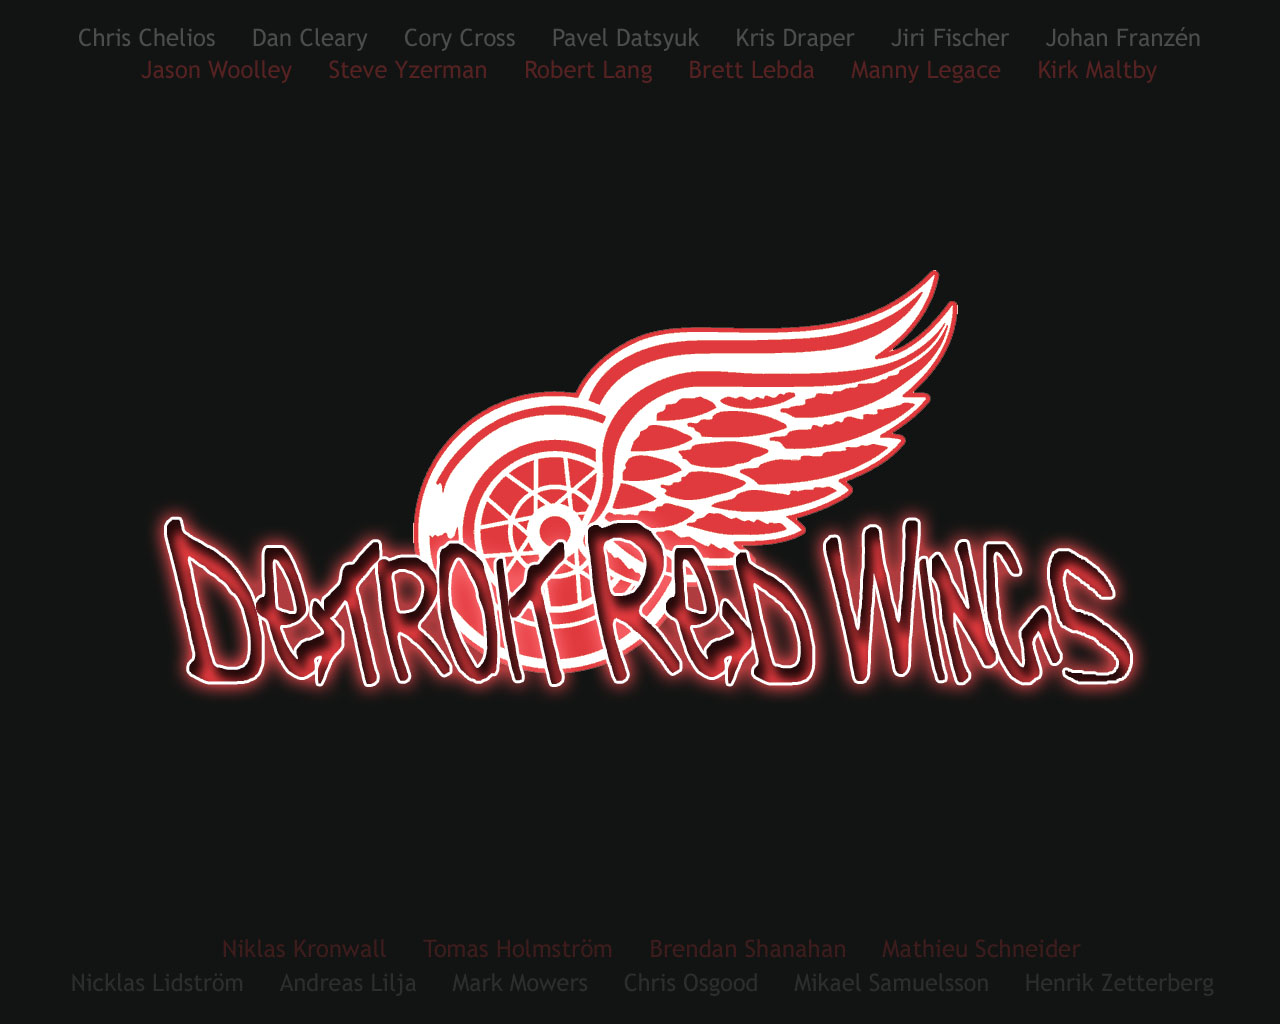 Yzerman-red Wings wallpaper by seebass0619 - Download on ZEDGE™